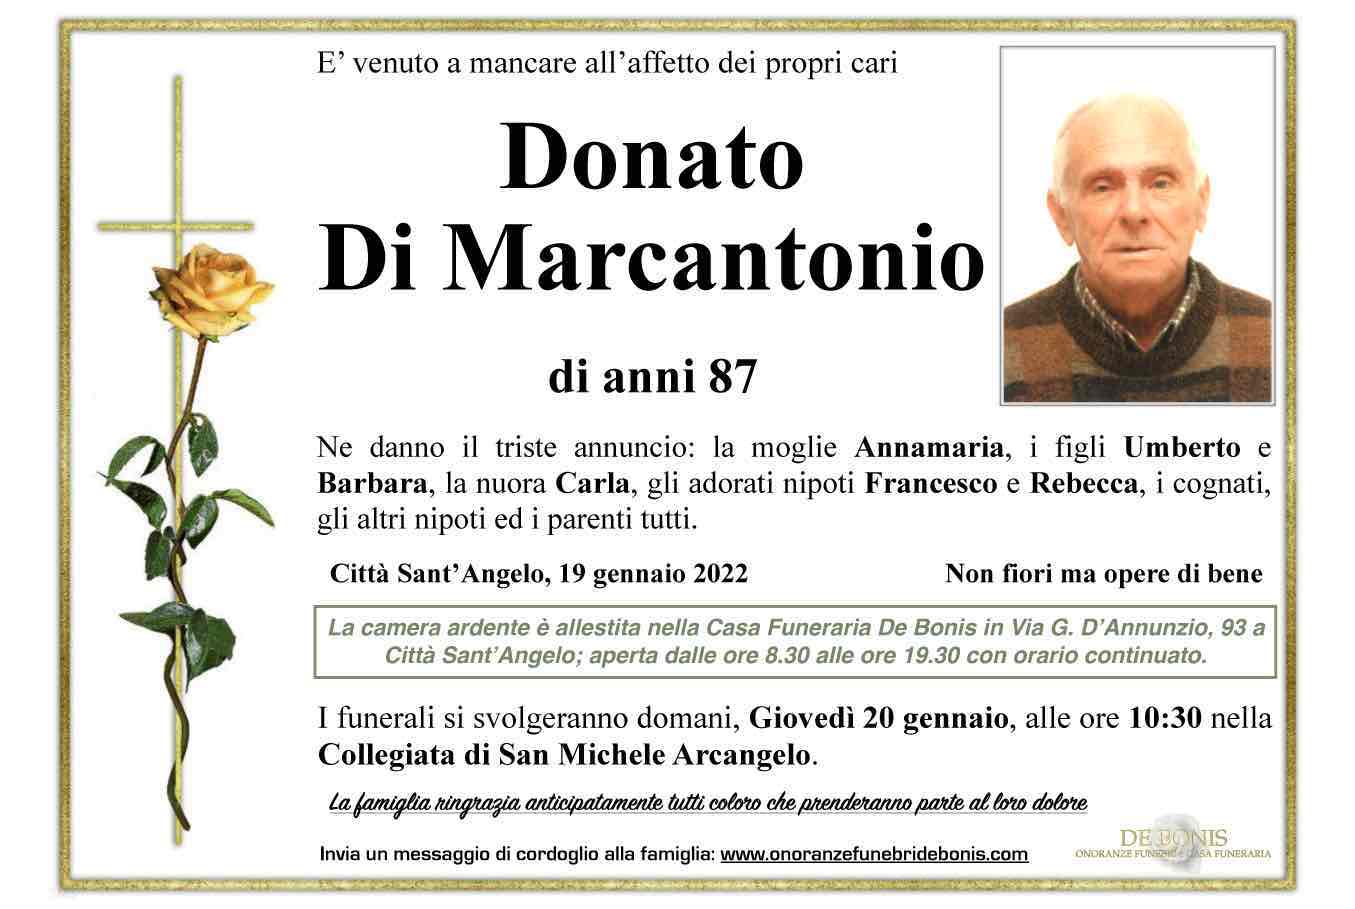 Donato Di Marcantonio